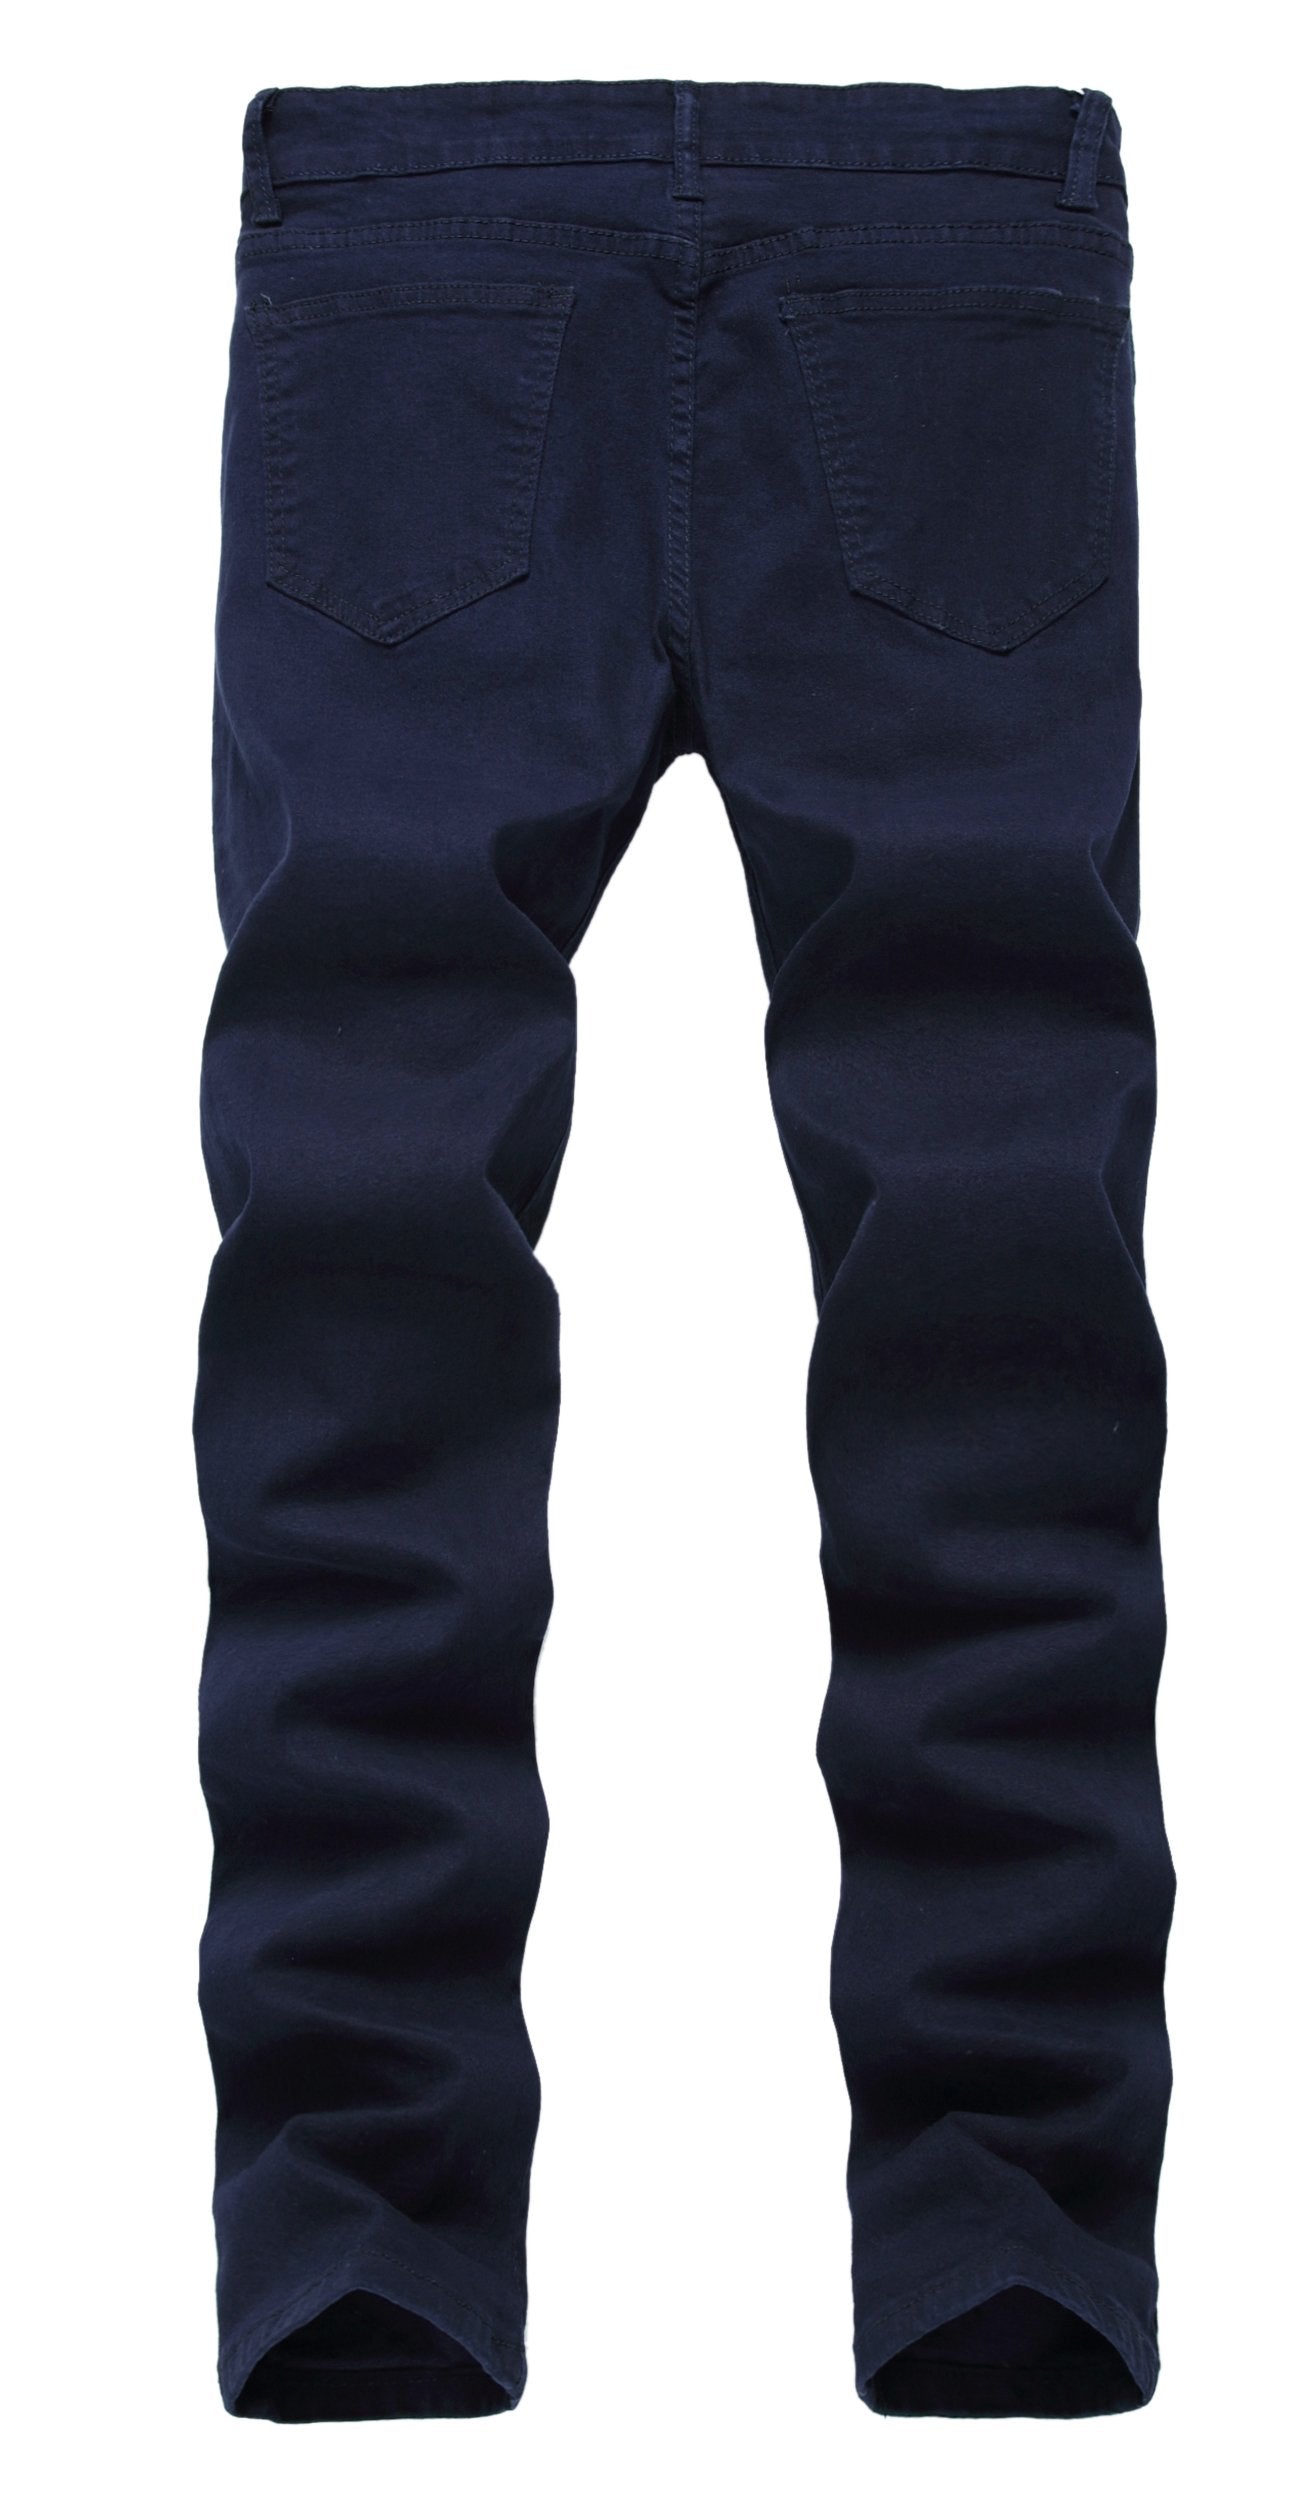 Boy's Skinny Fit Stretch Fashion Jeans Pants, Navy Blue, 12